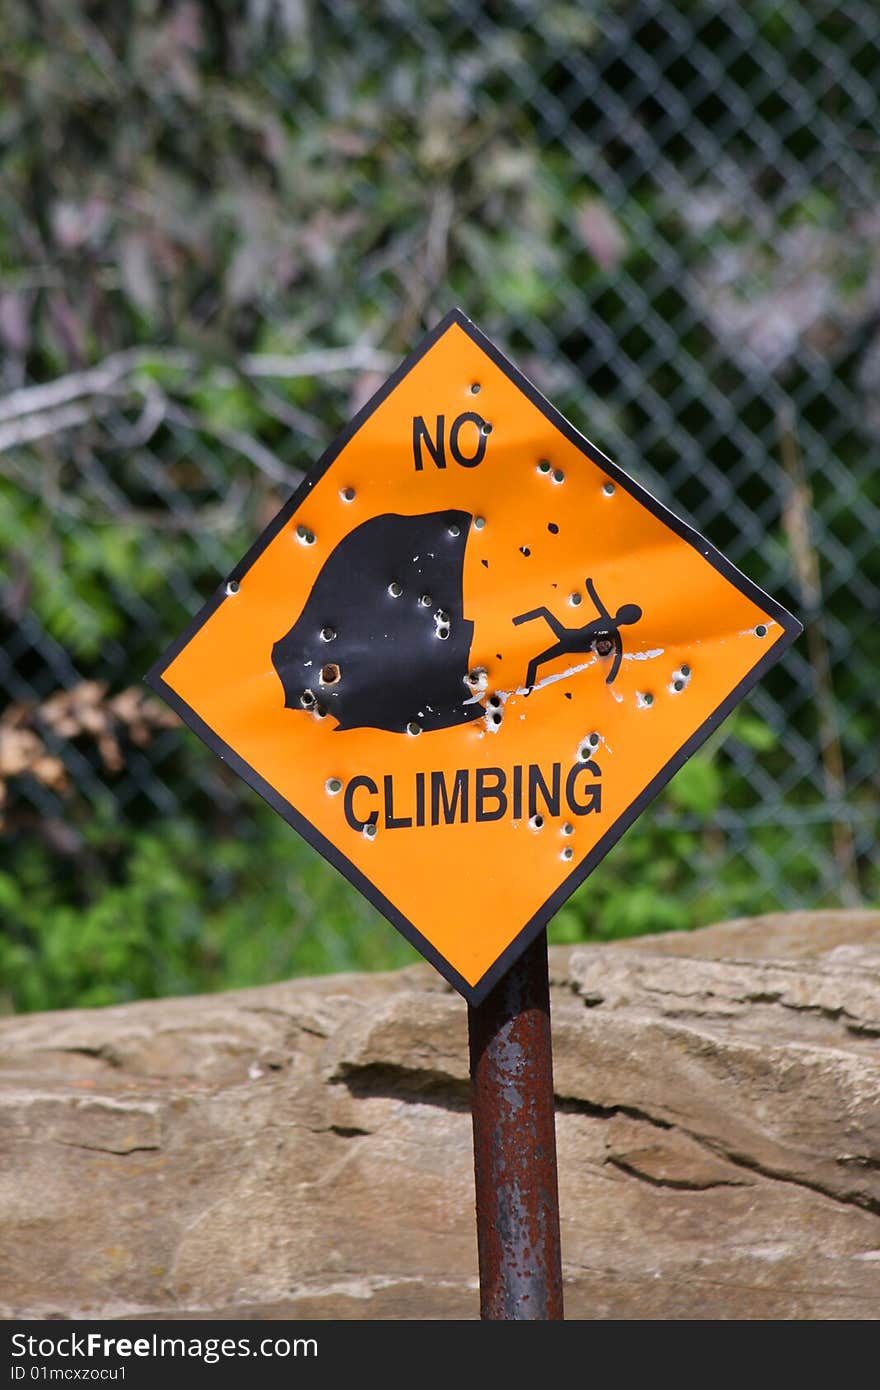 No Climbing Warning sign object